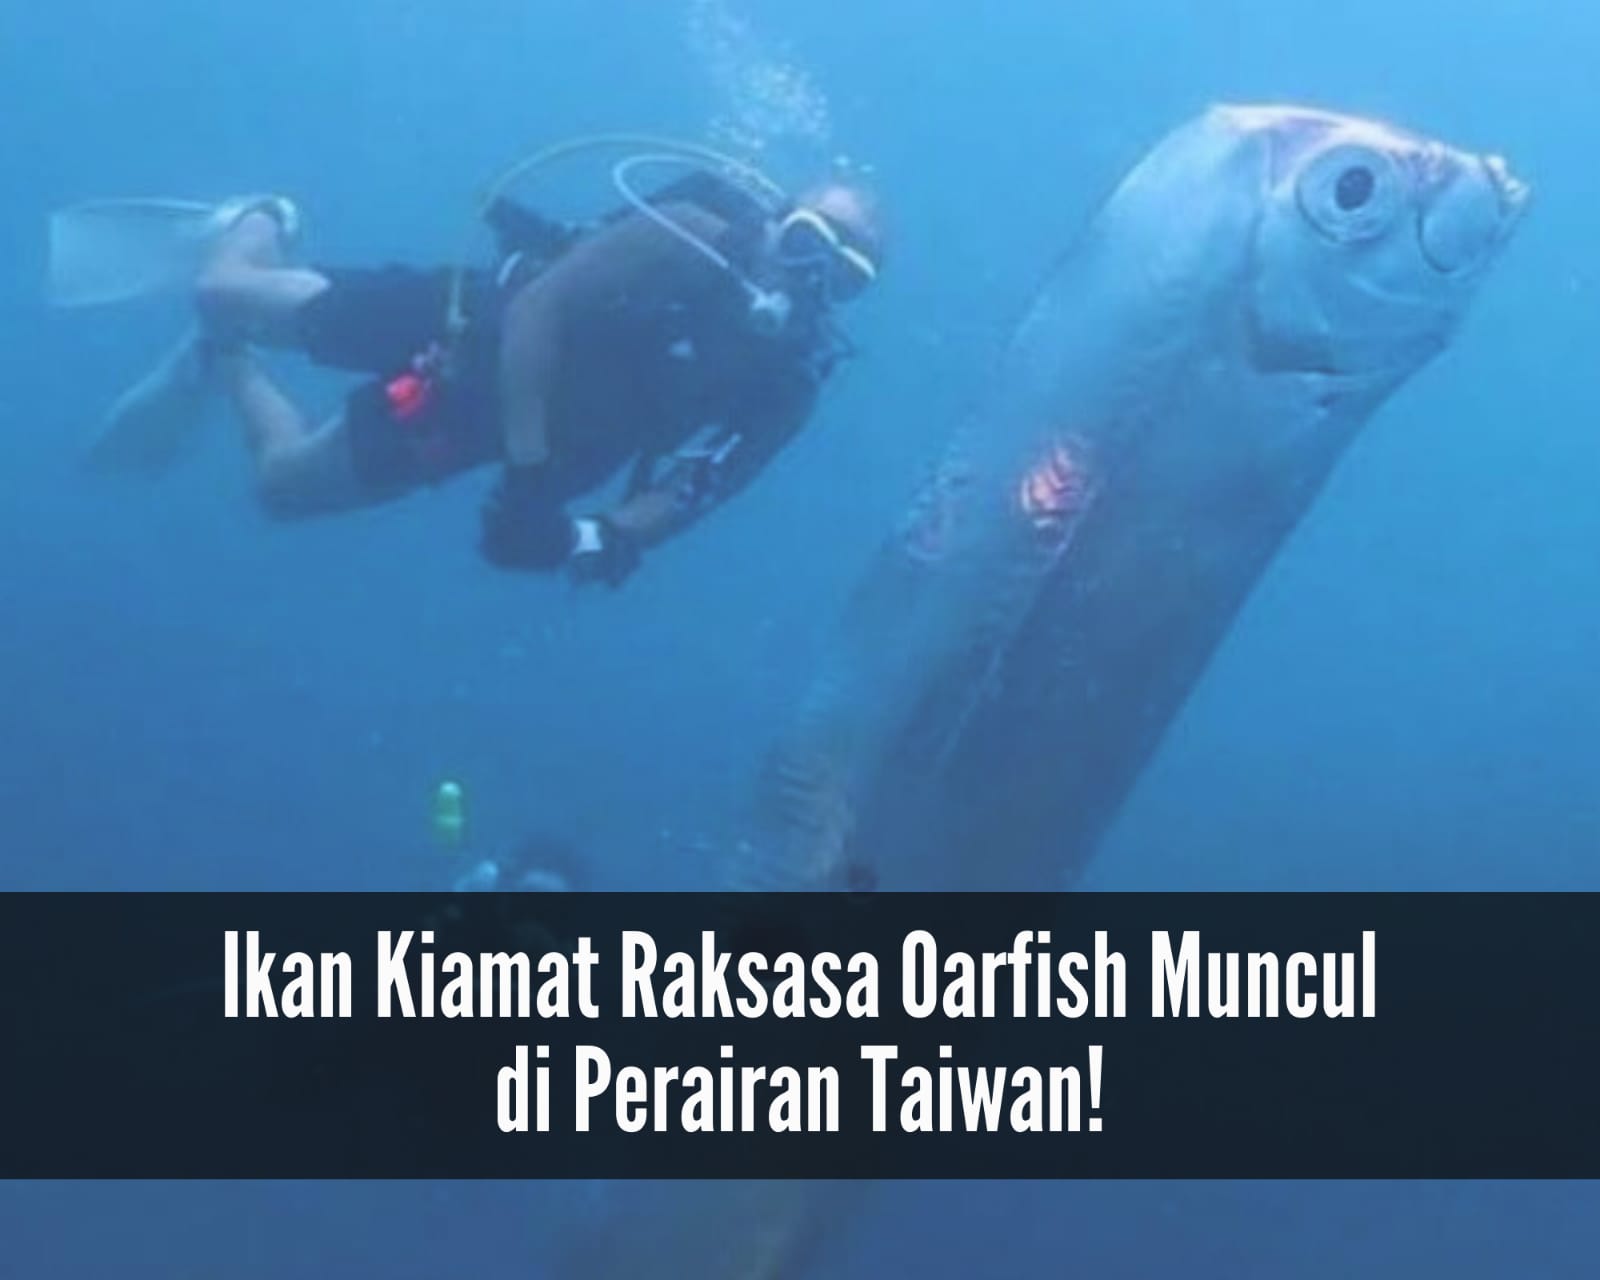 Oarfish Ikan Kiamat Muncul ke Permukaan Perairan Taiwan, Kenali Ciri-ciri hingga Habitatnya